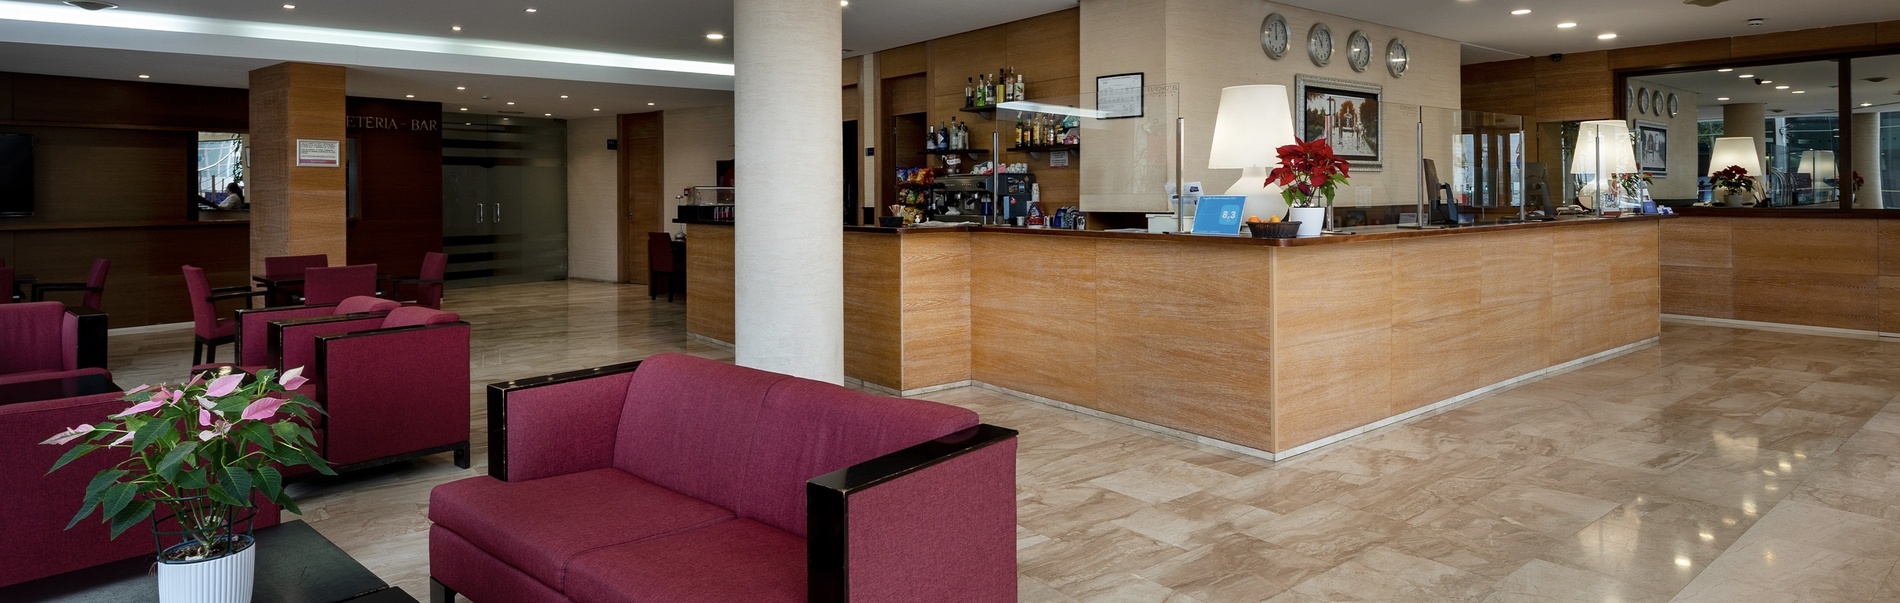 un lobby de un hotel con sillas rojas y un mostrador de recepción